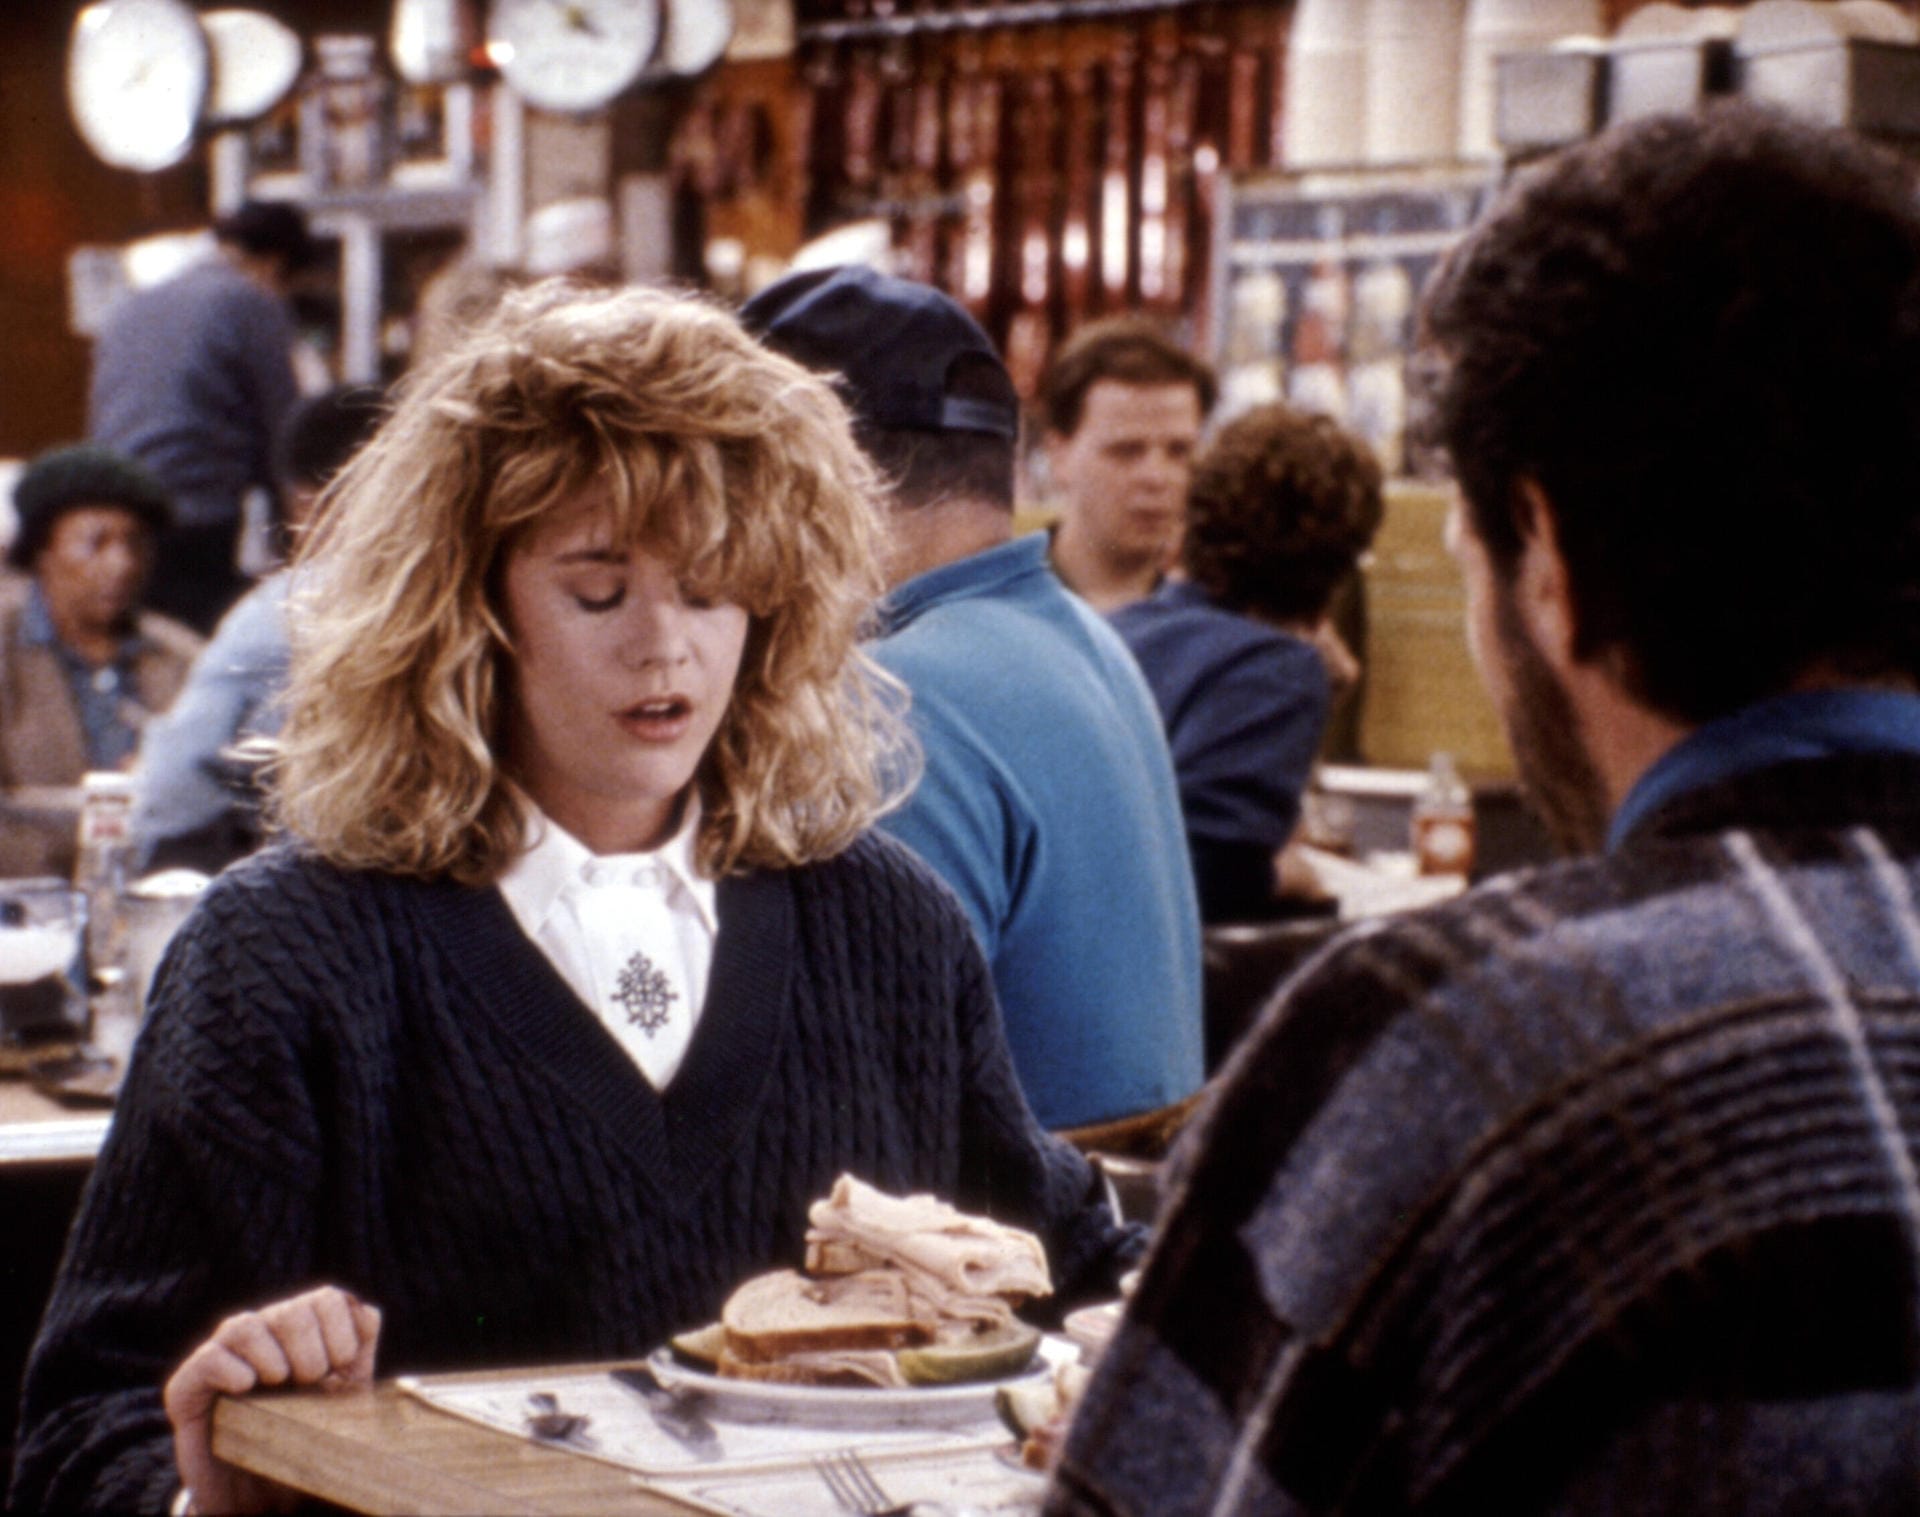 1989 gelang ihr an der Seite von Billy Crystal in "Harry und Sally" der große Durchbruch. Unvergessen: Die Orgasmus-Szene im Restaurant.